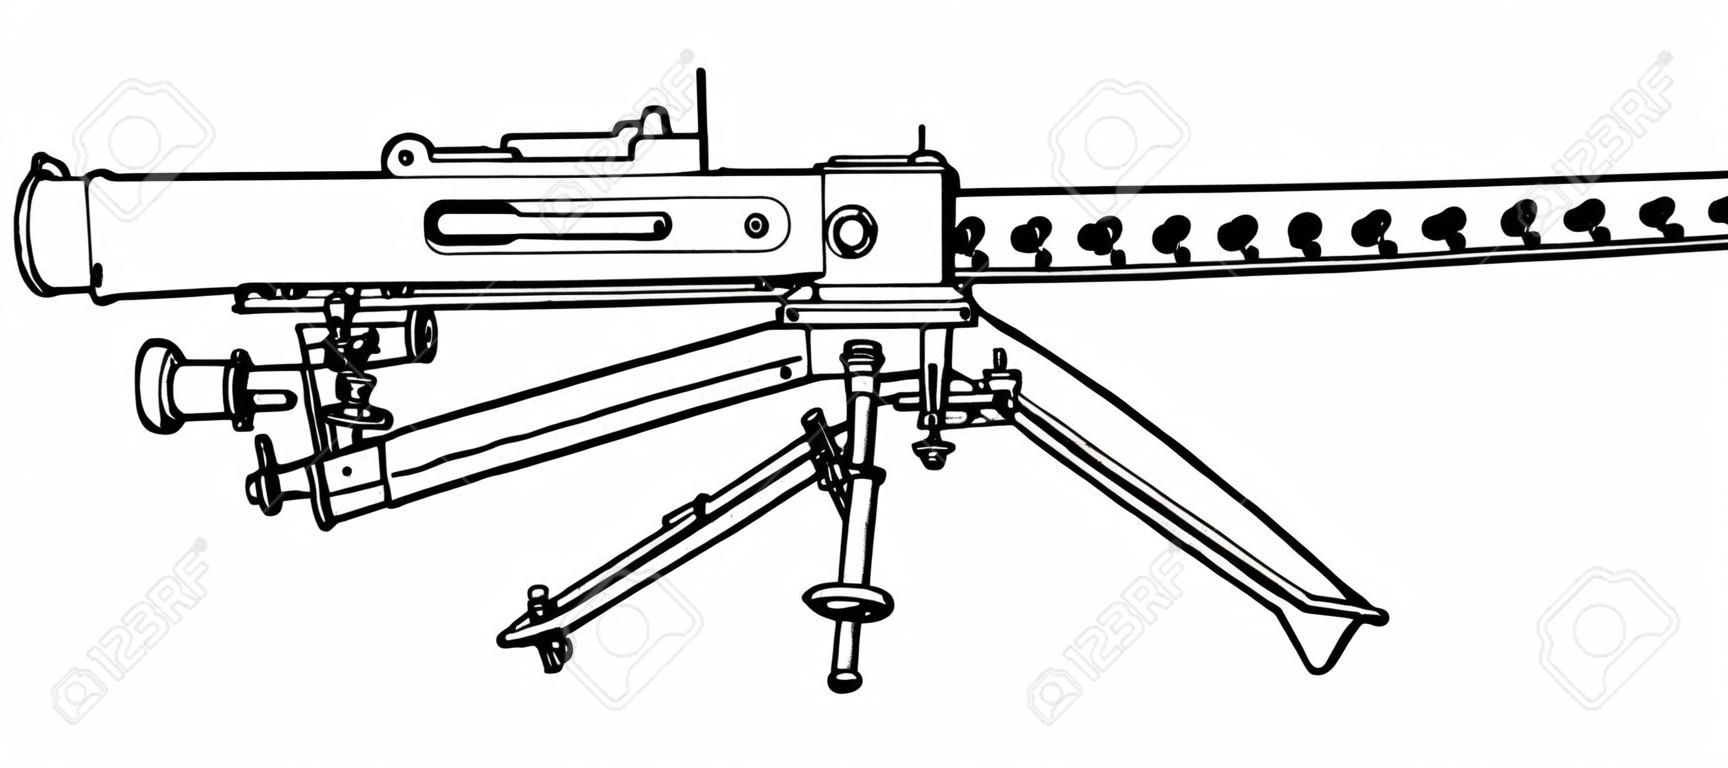 Browning Machine Gun wurde als leichte Infanterie, Vintage-Linienzeichnung oder Gravierillustration verwendet.